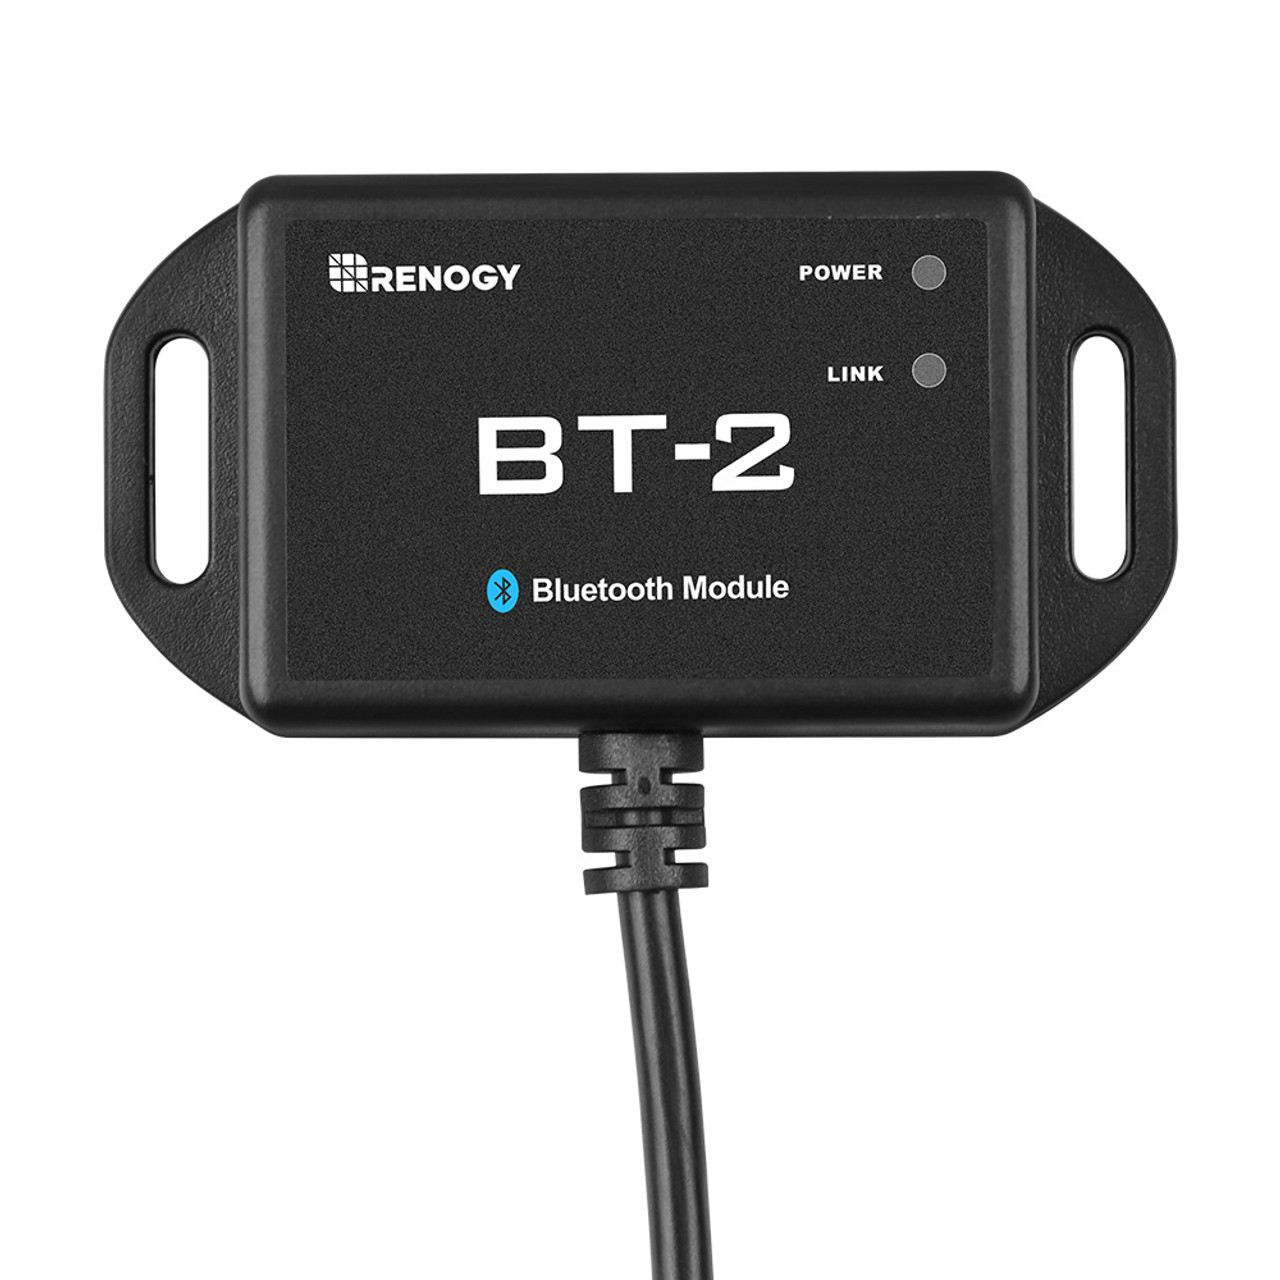 BT-2 Bluetooth Module